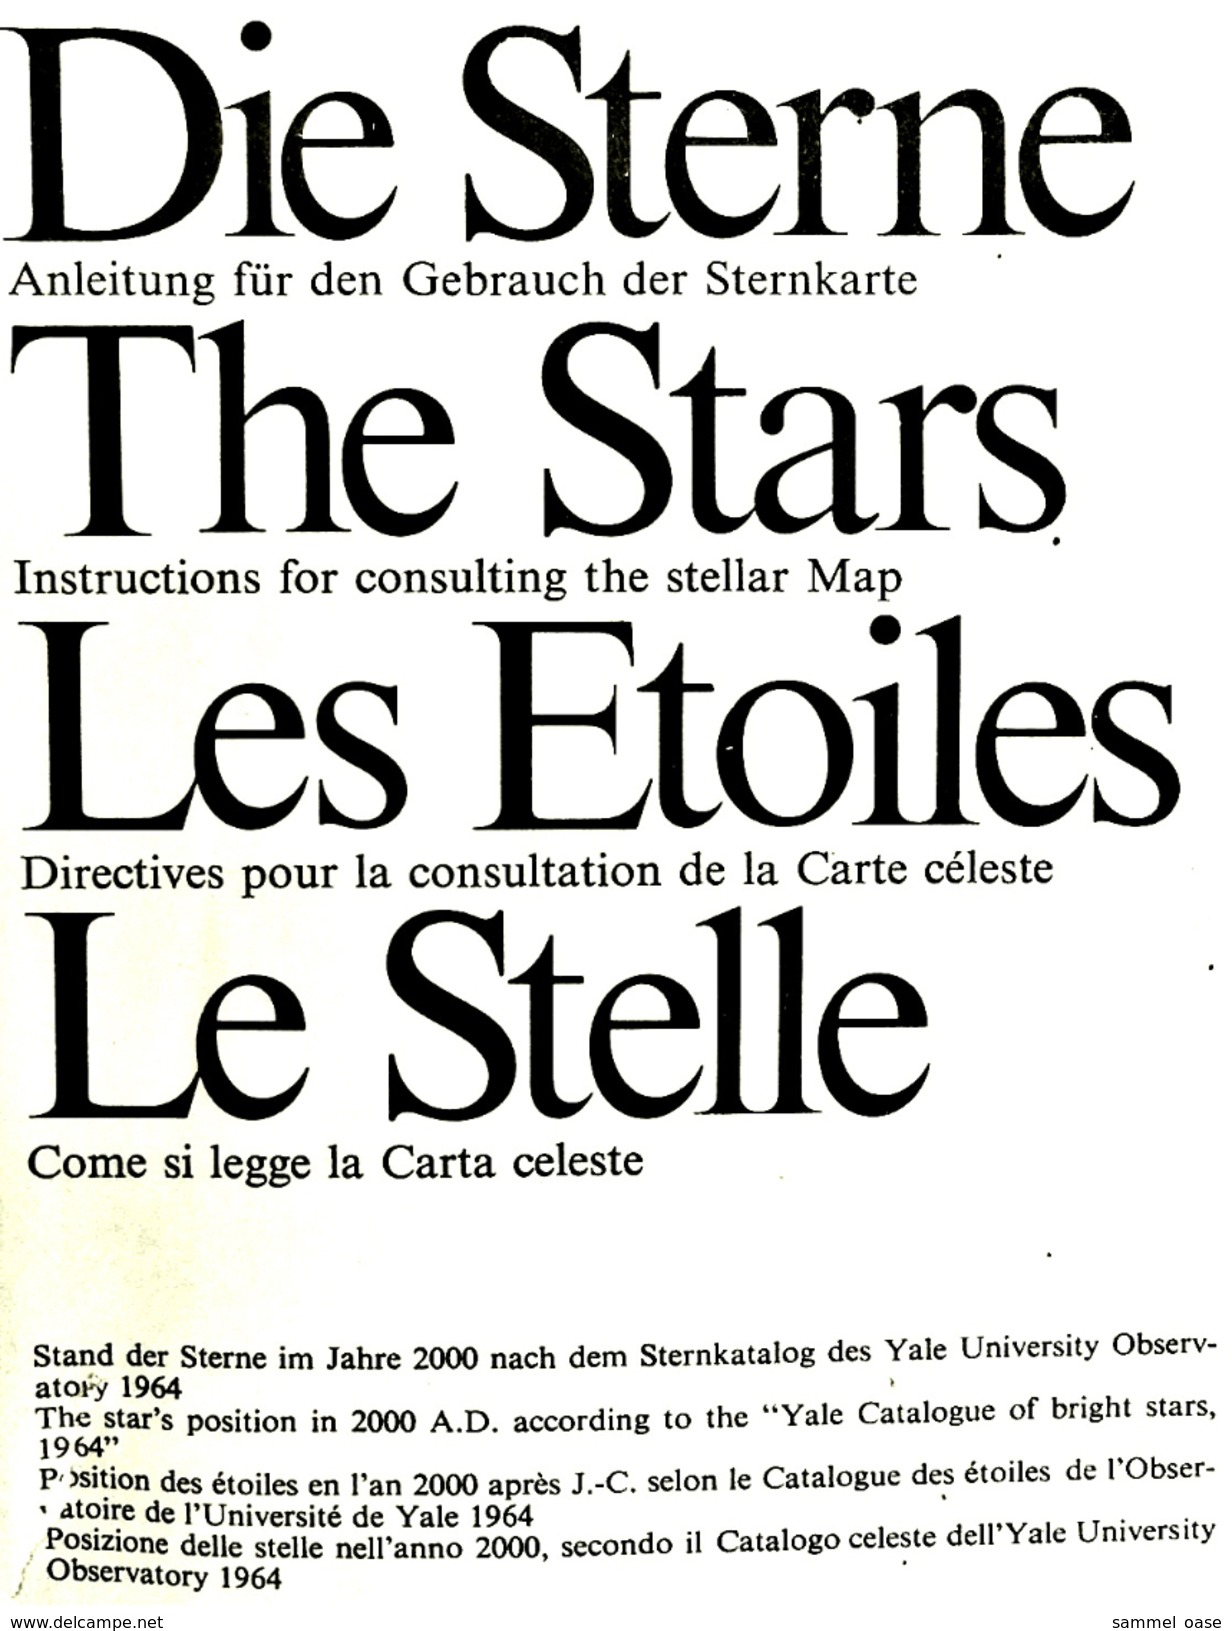 Hallwag Faltkarte / Plakat : Die Sterne  - ca. 125 x 84 cm  -  von ca. 1985